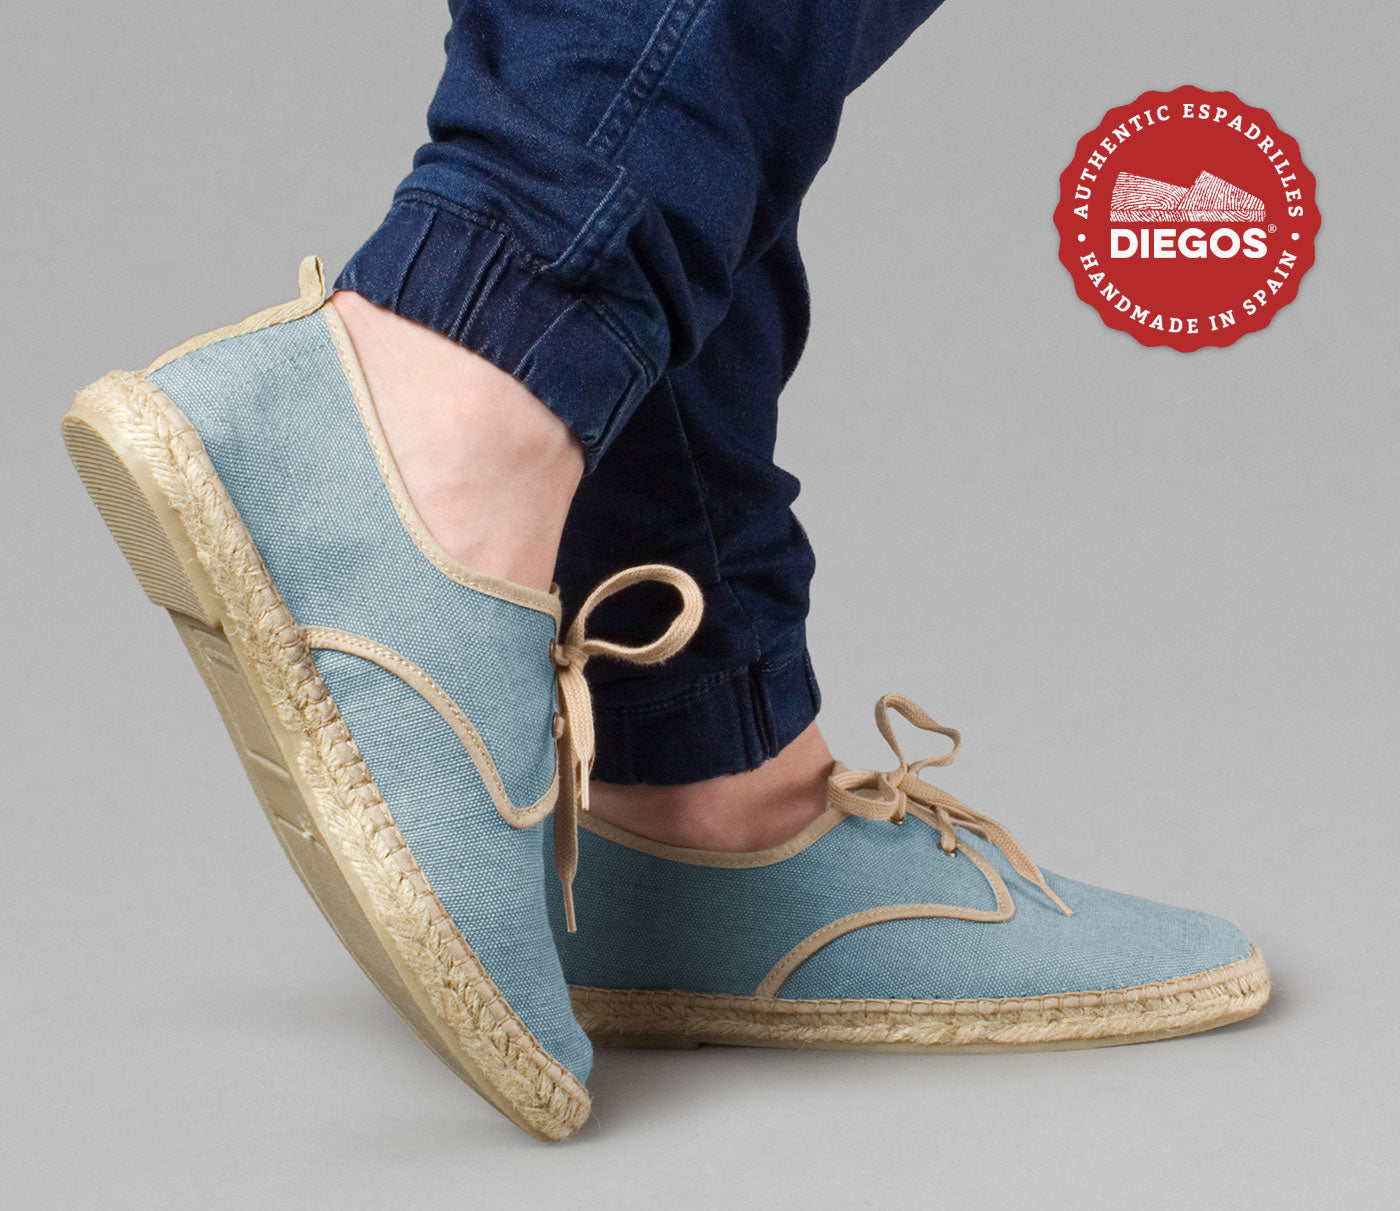 Aan boord Begroeten heilig Men's blue espadrilles shoes handmade in Spain | DIEGOS® – diegos.com